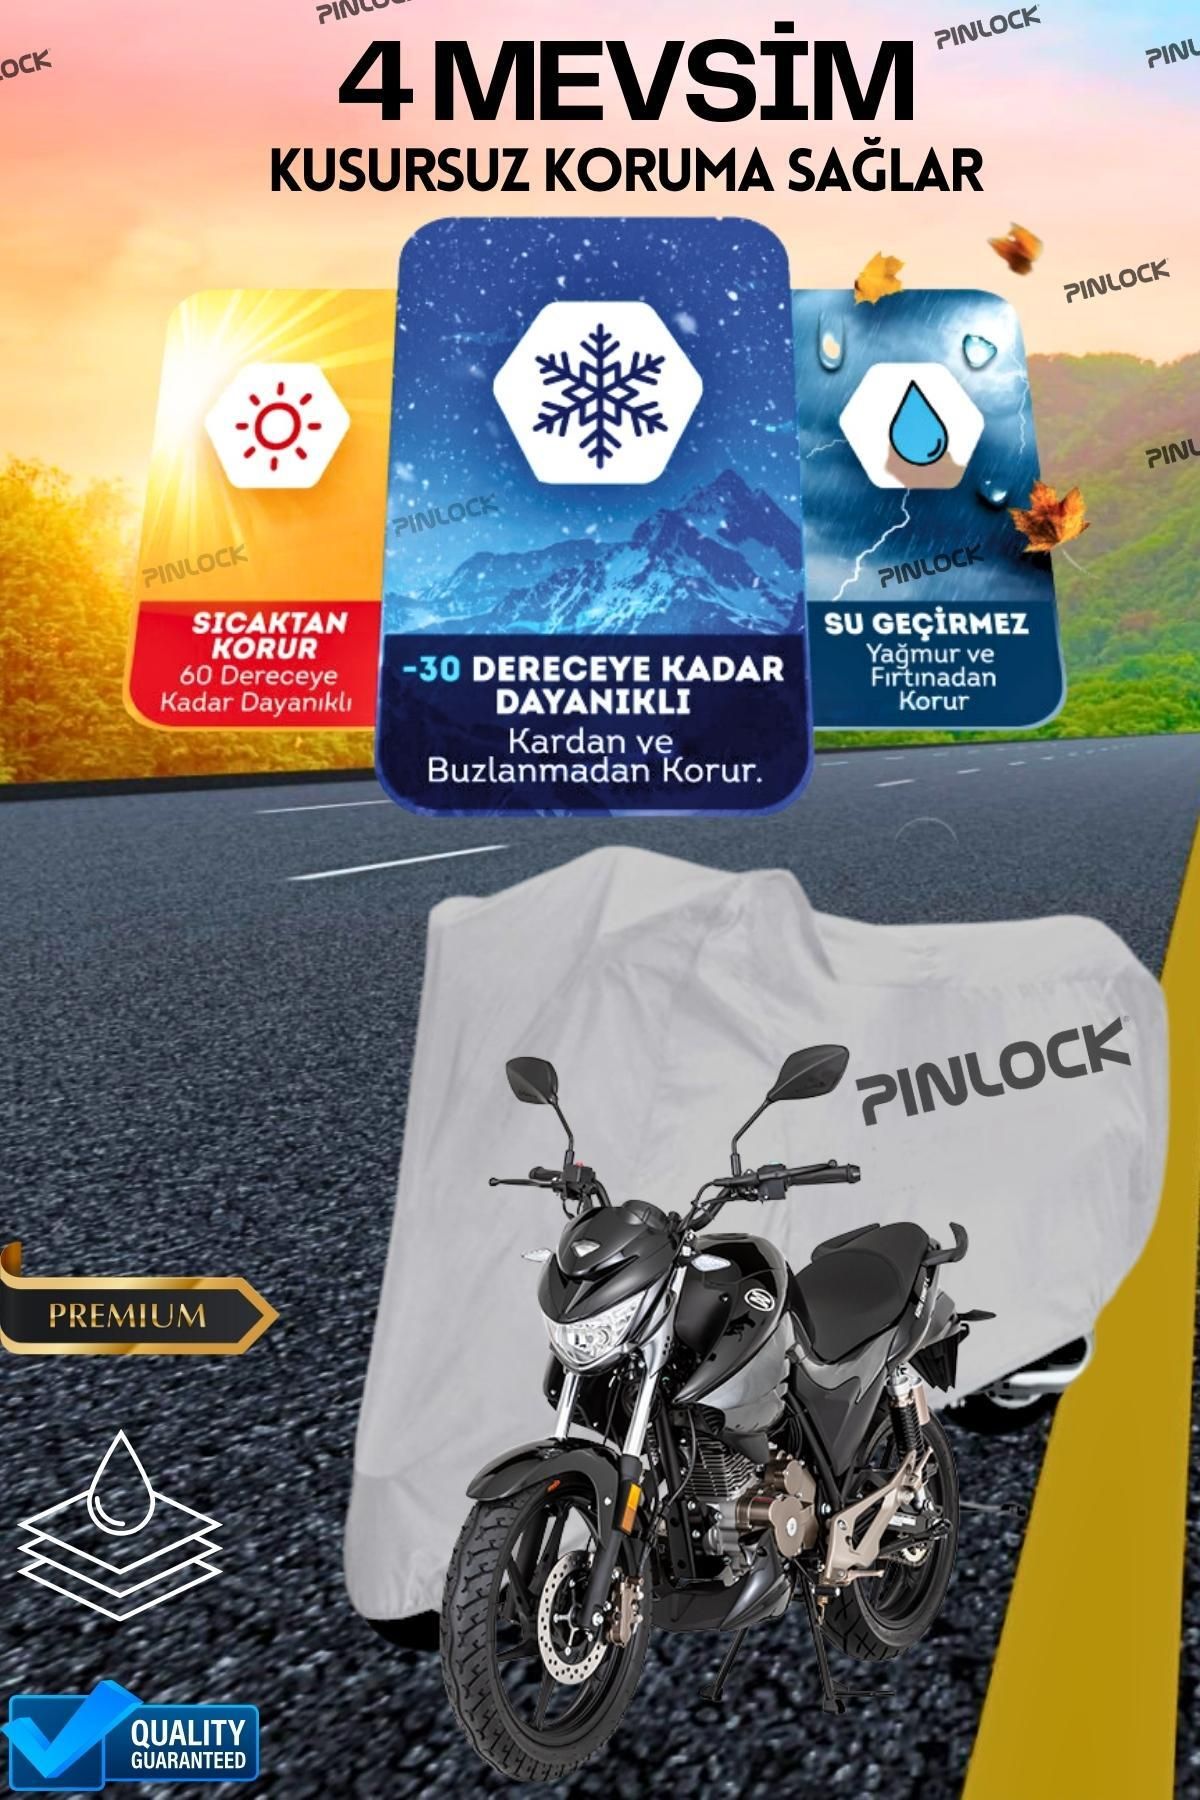 pinlock Mondial Drift L Su Geçirmez Dayanıklı Motosiklet Brandası (TOKALI)